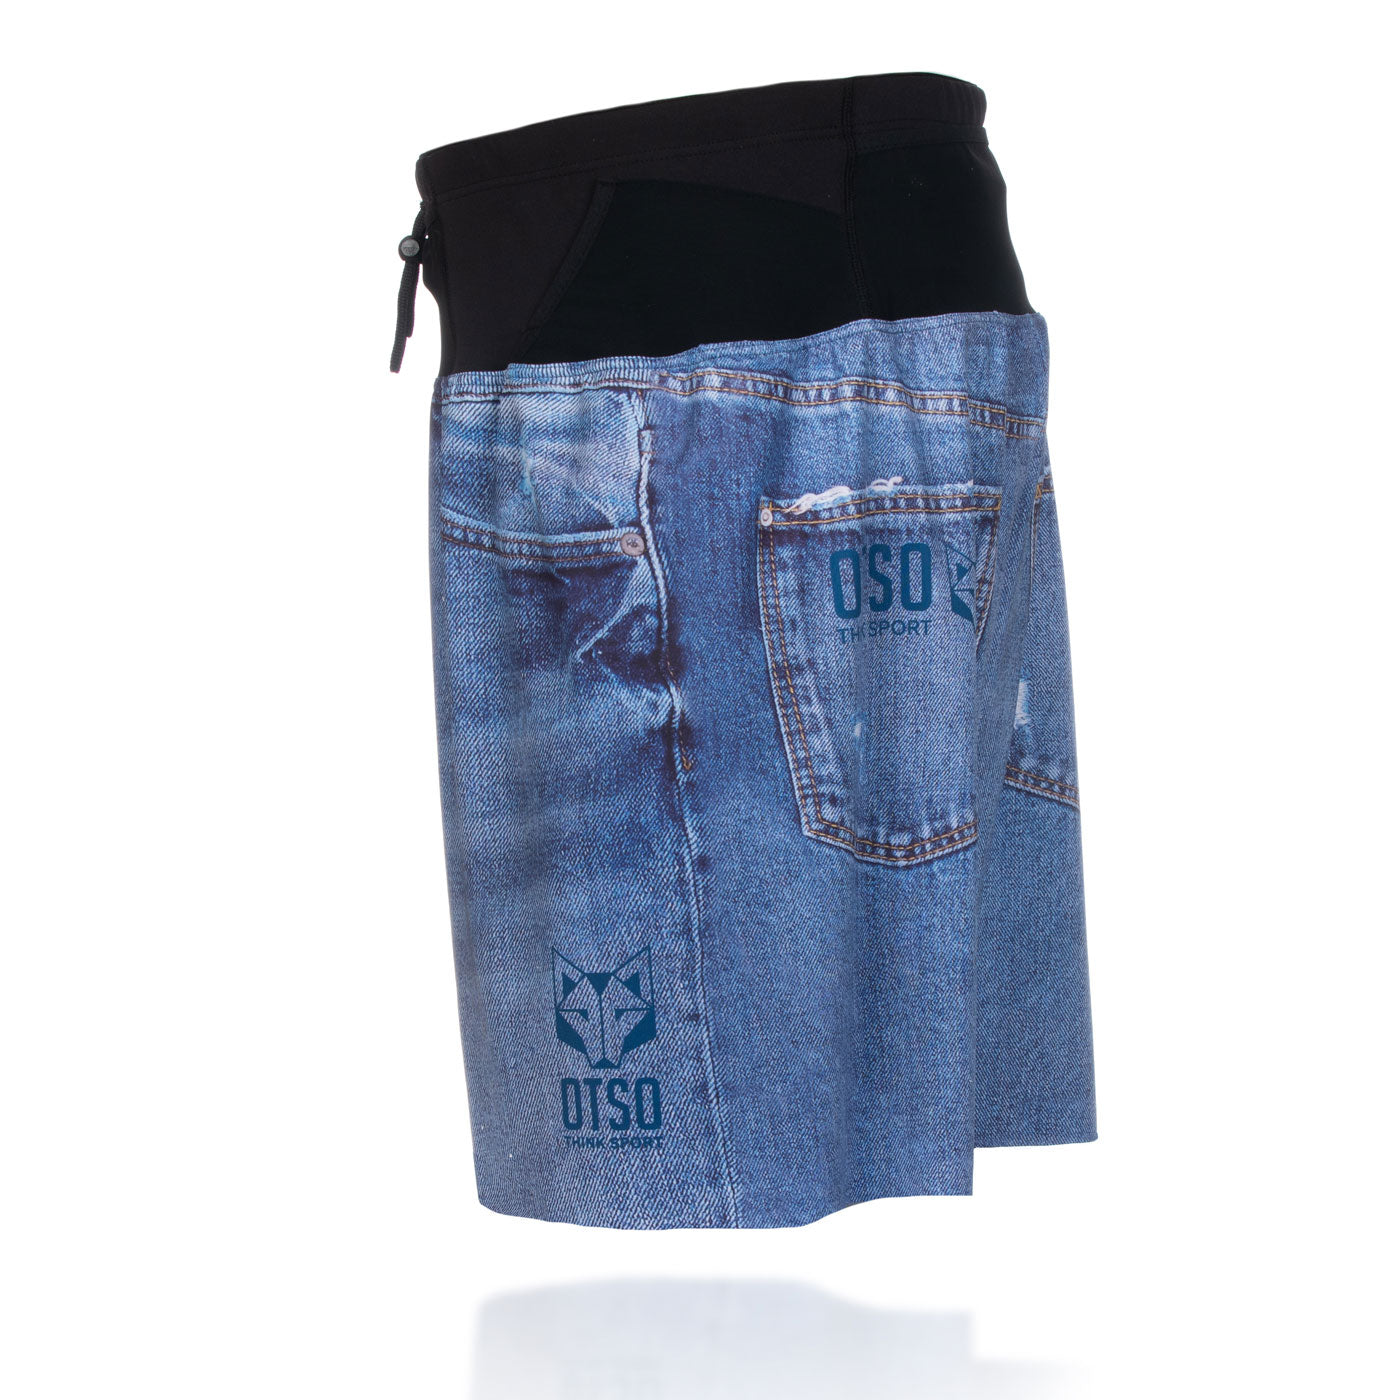 Pantalón corto - Blue Jeans